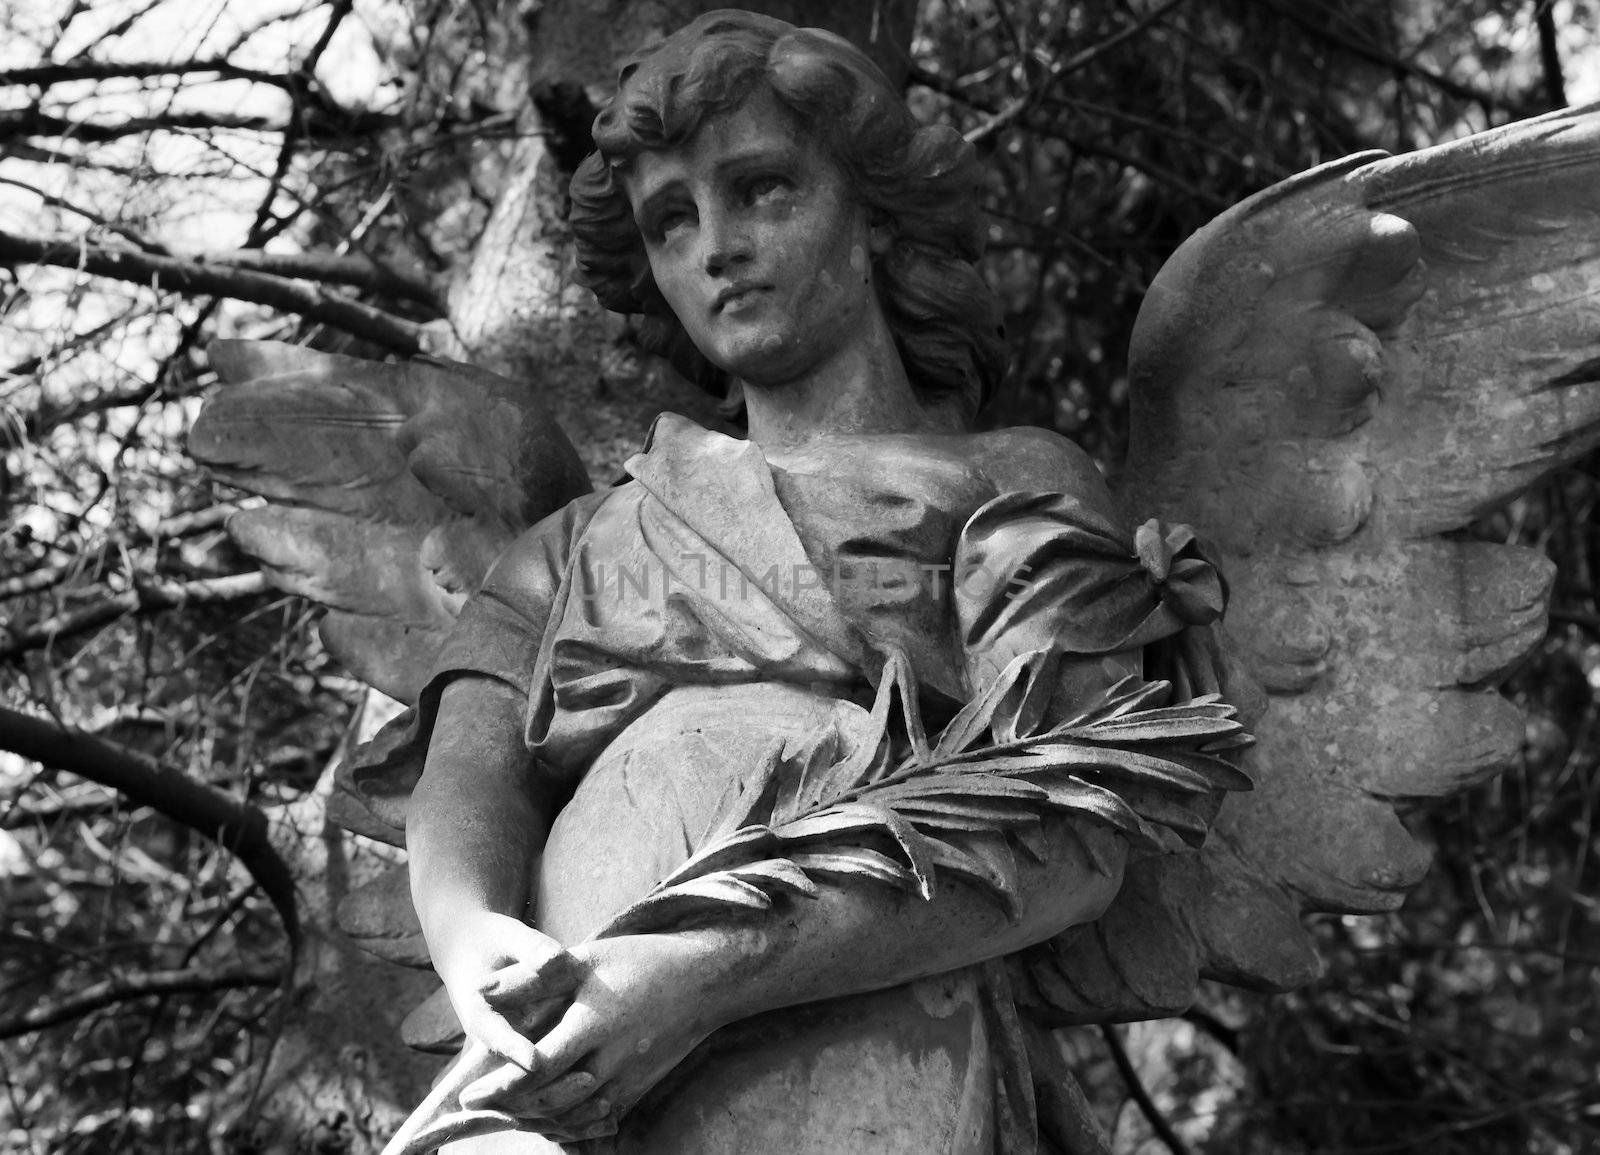 Angel statue in B/W